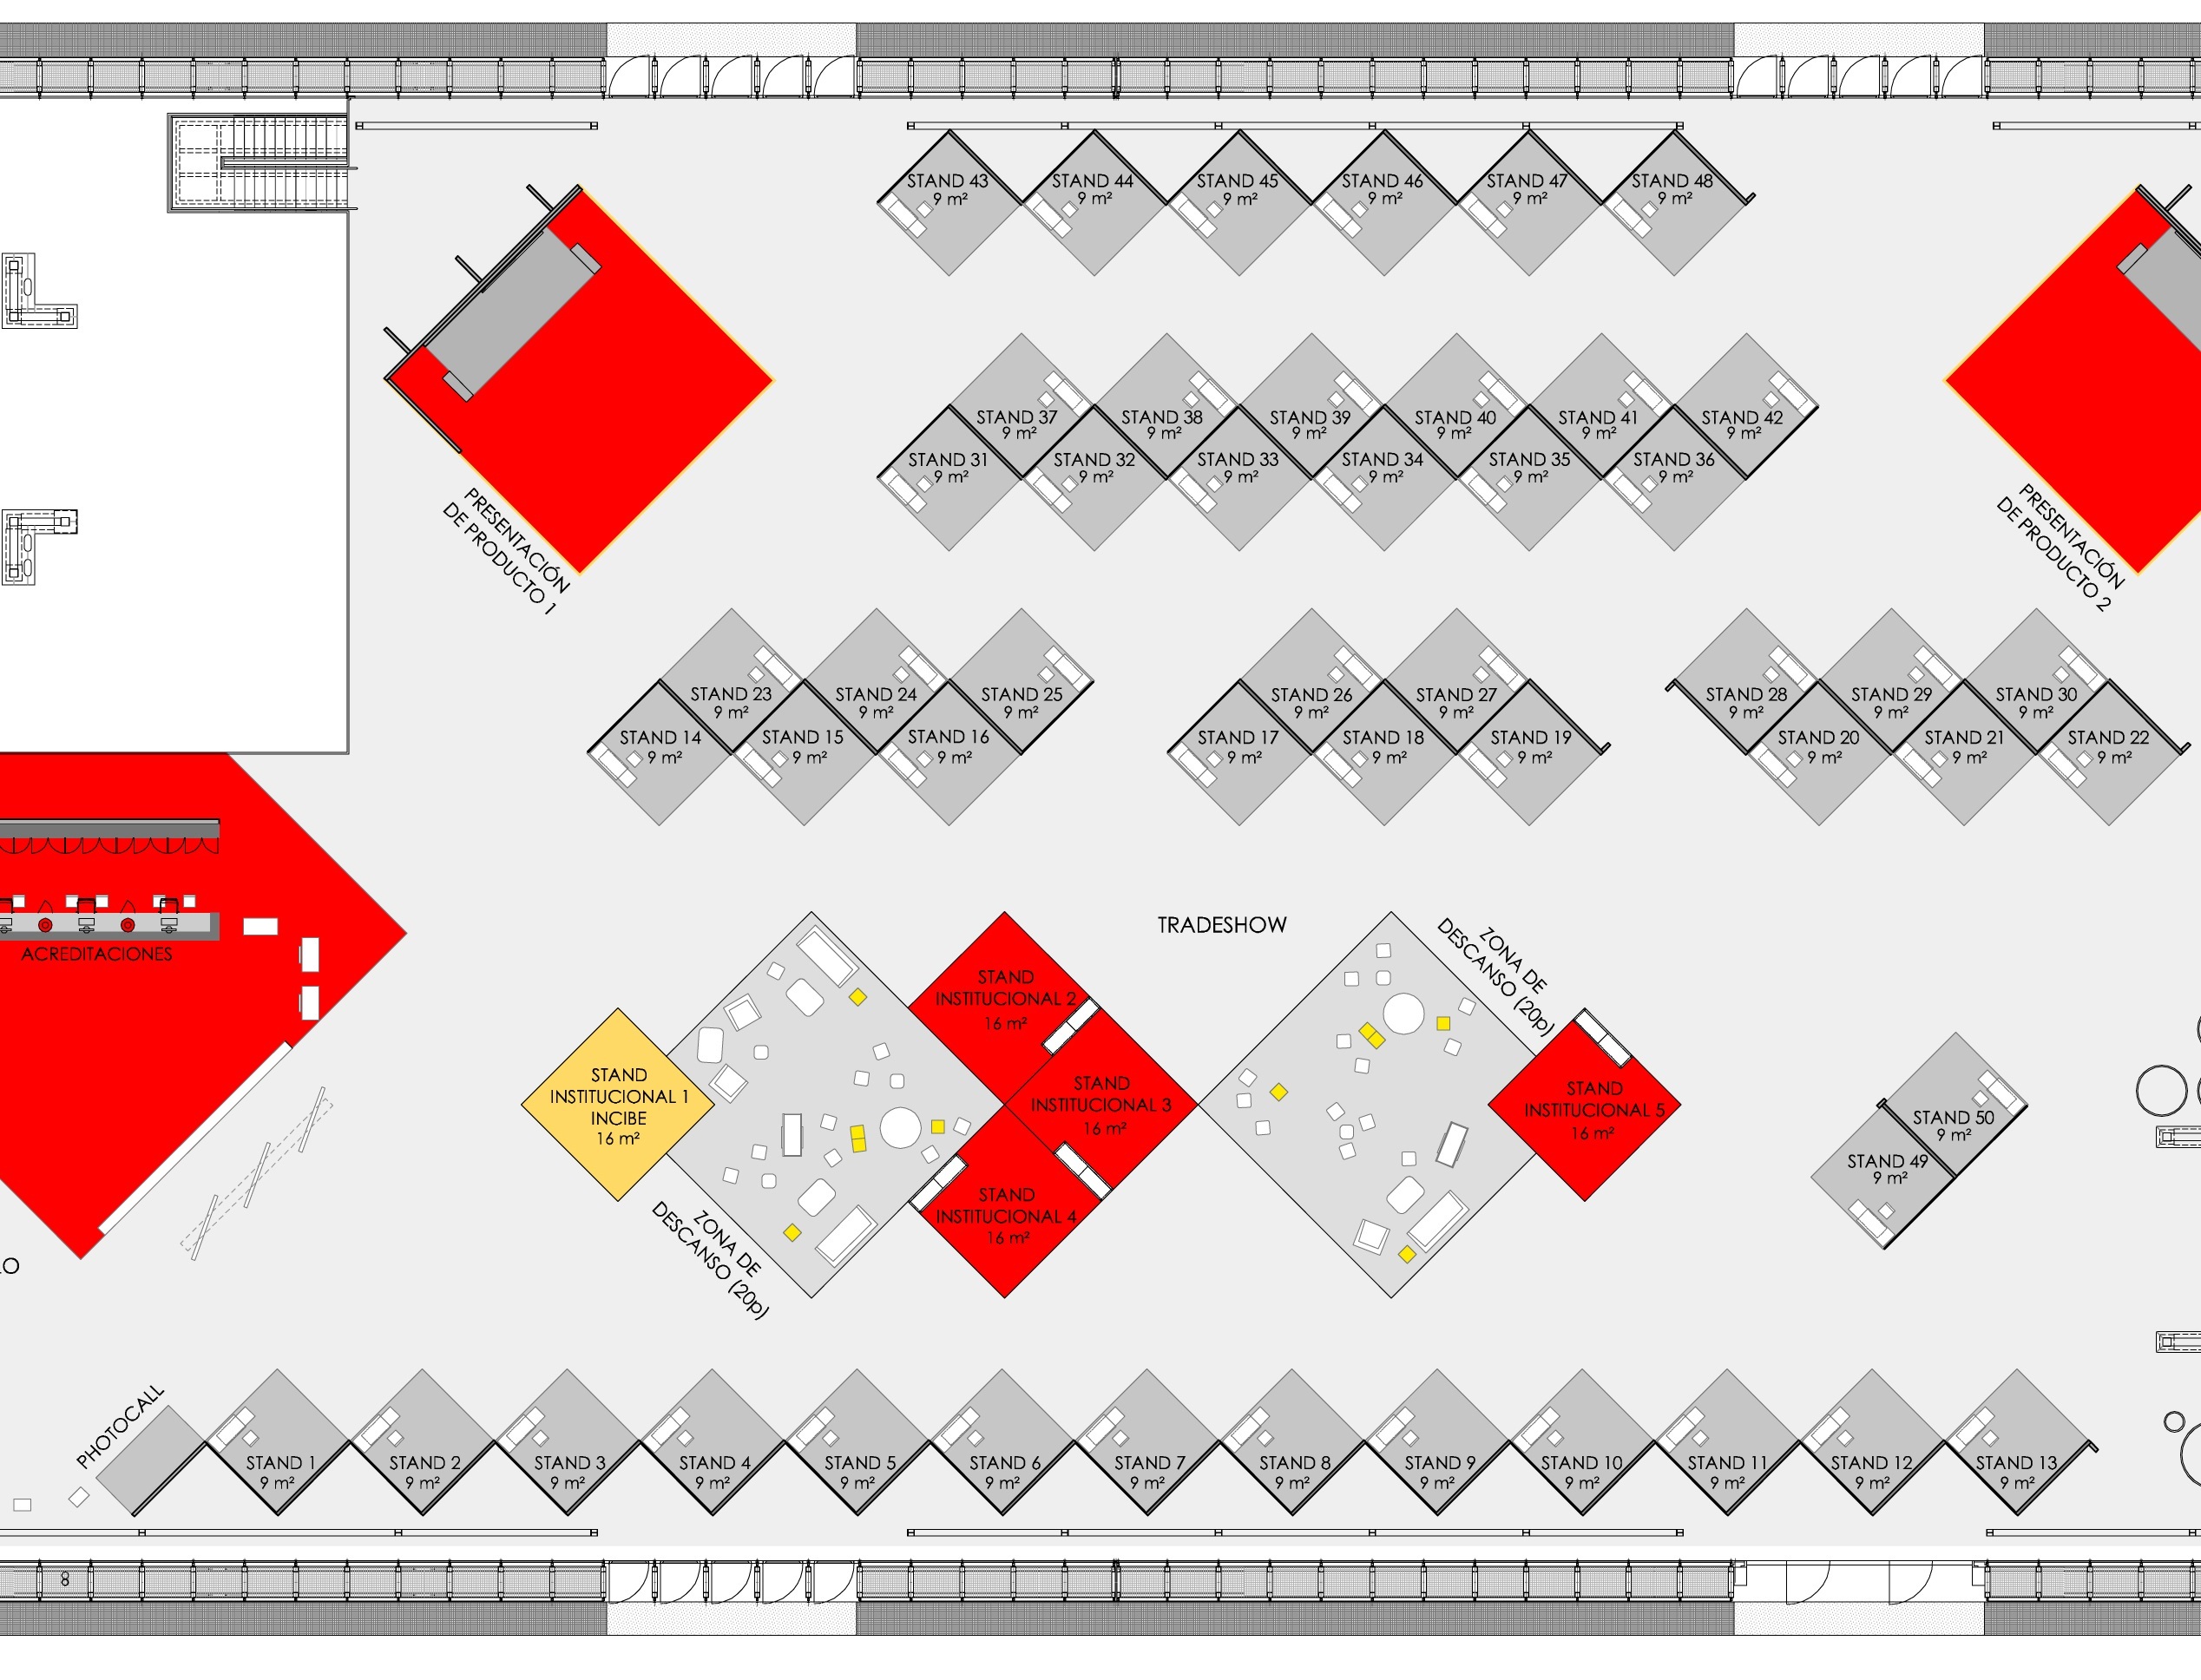 imagen mapa de expositores del trade show en el palacio de congresos